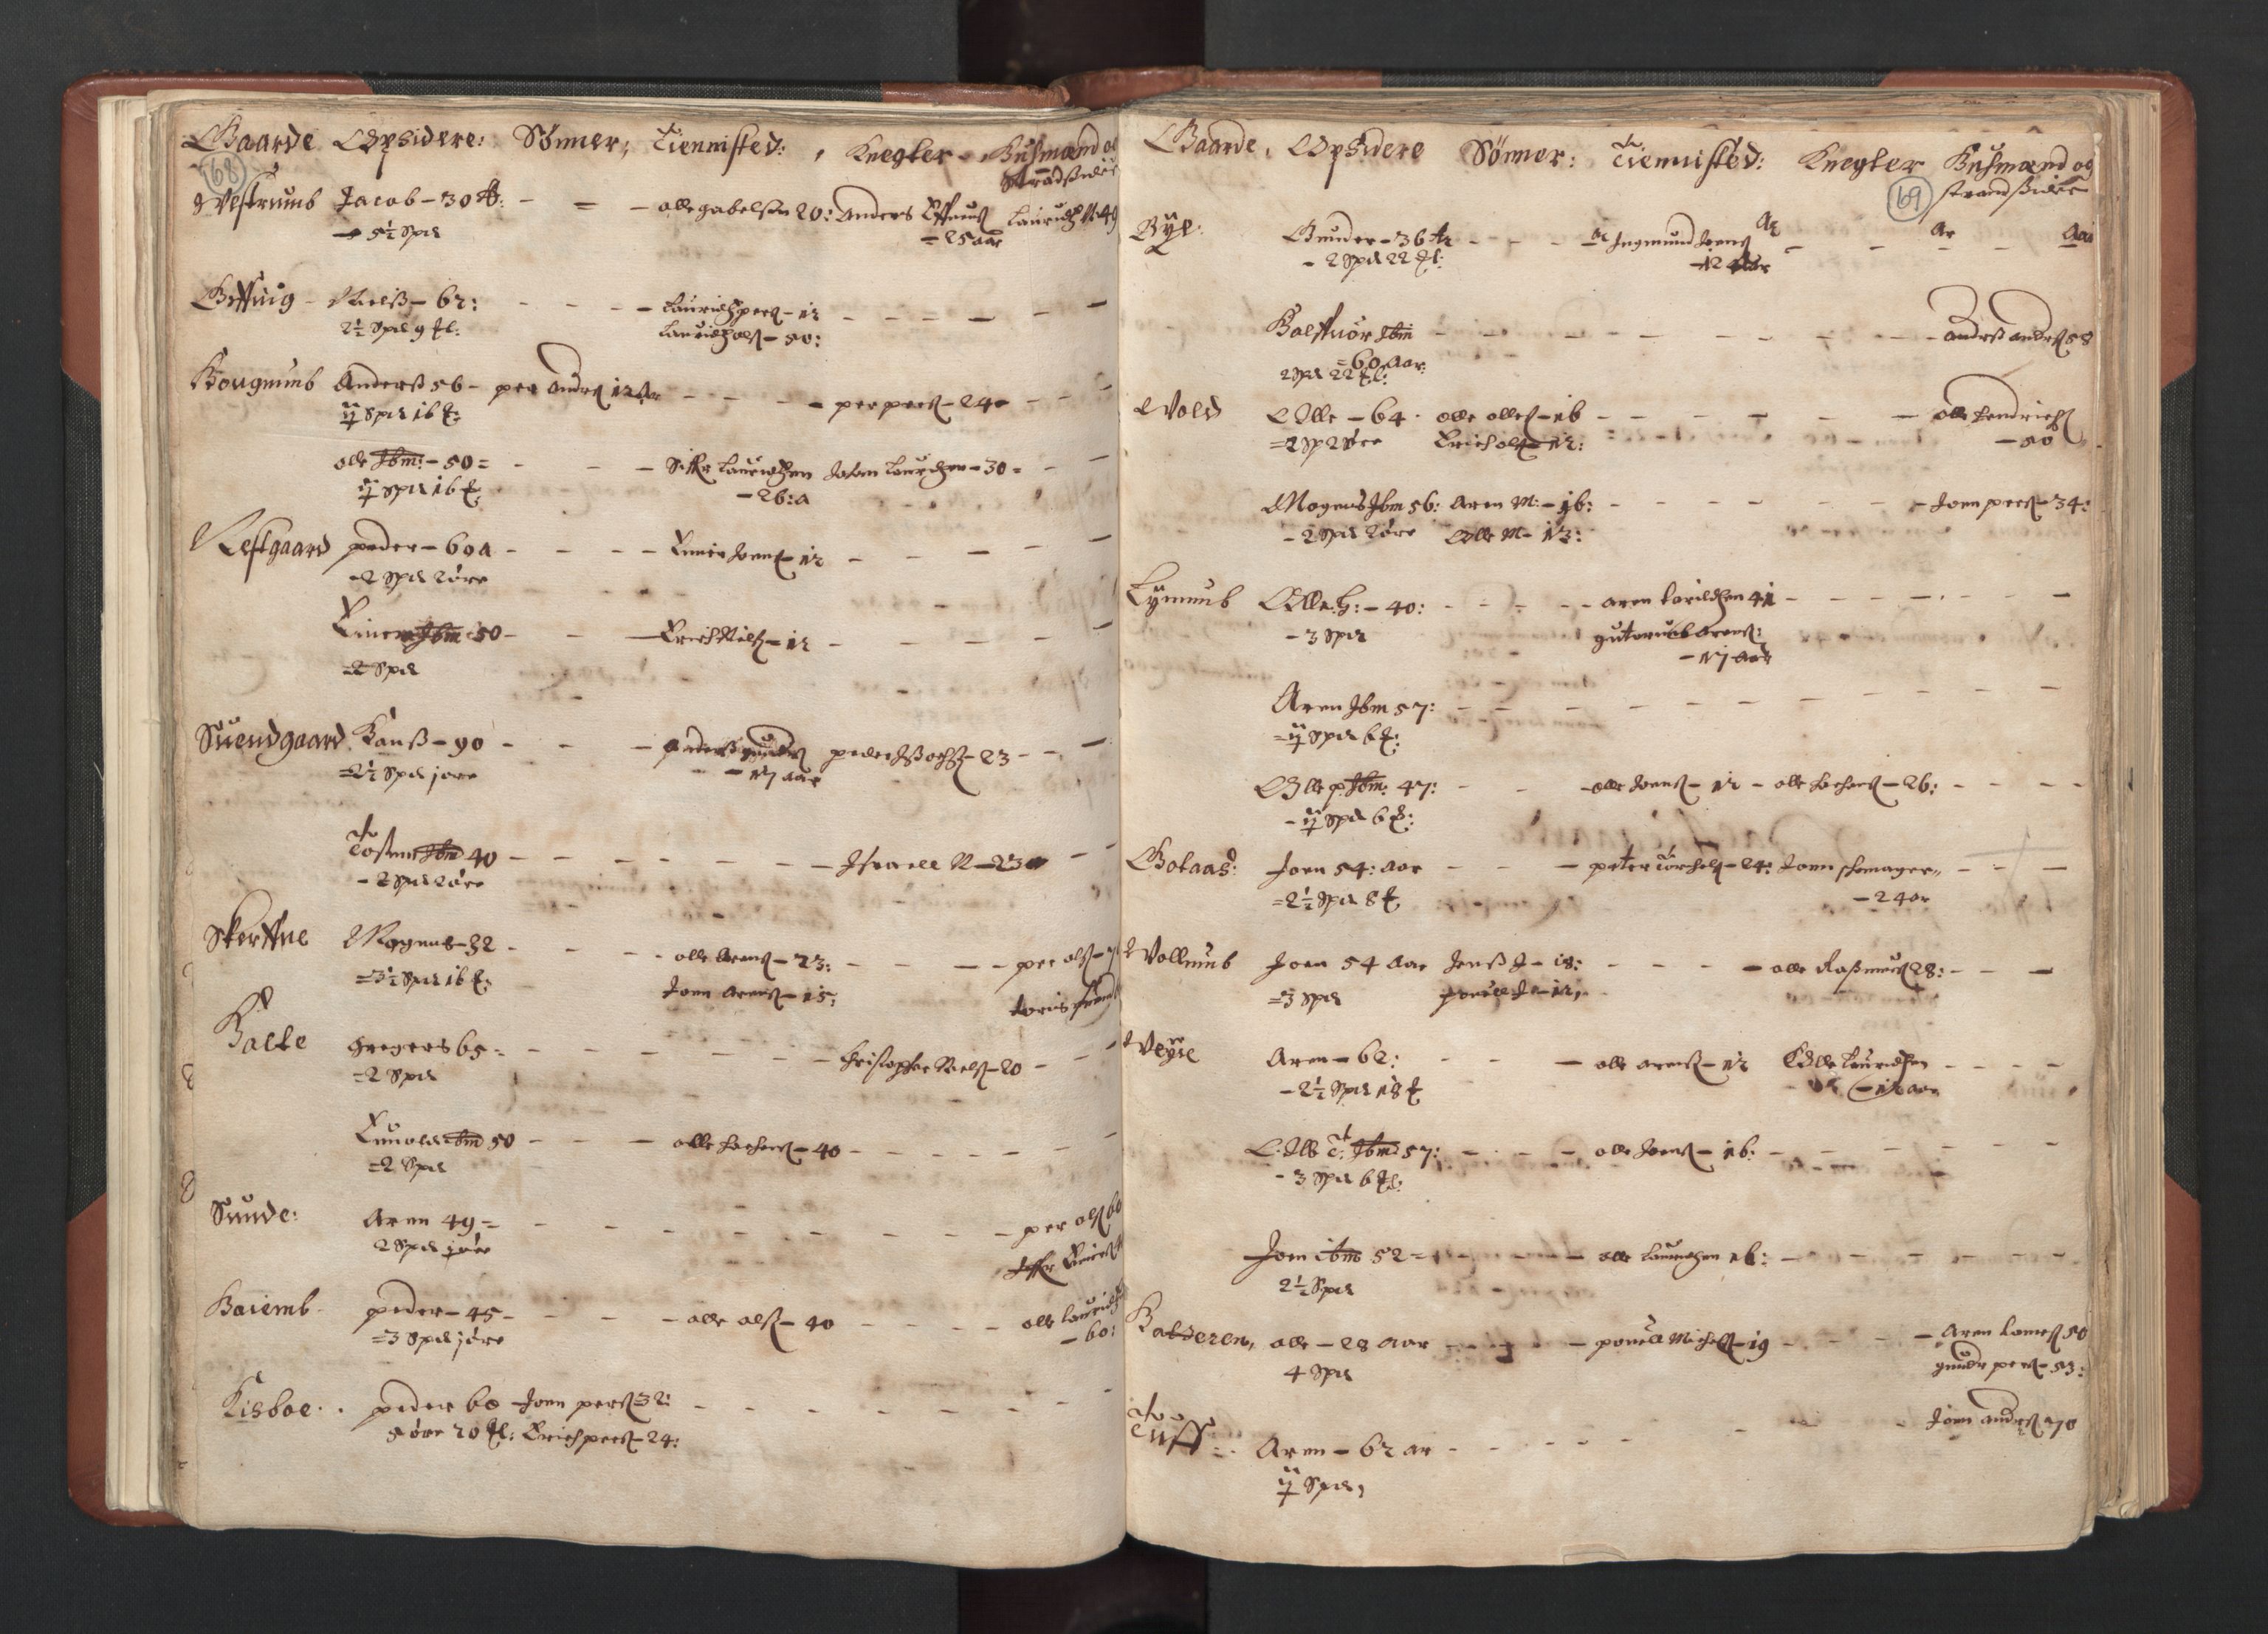 RA, Bailiff's Census 1664-1666, no. 19: Fosen fogderi, Inderøy fogderi, Selbu fogderi, Namdal fogderi and Stjørdal fogderi, 1664-1665, p. 68-69